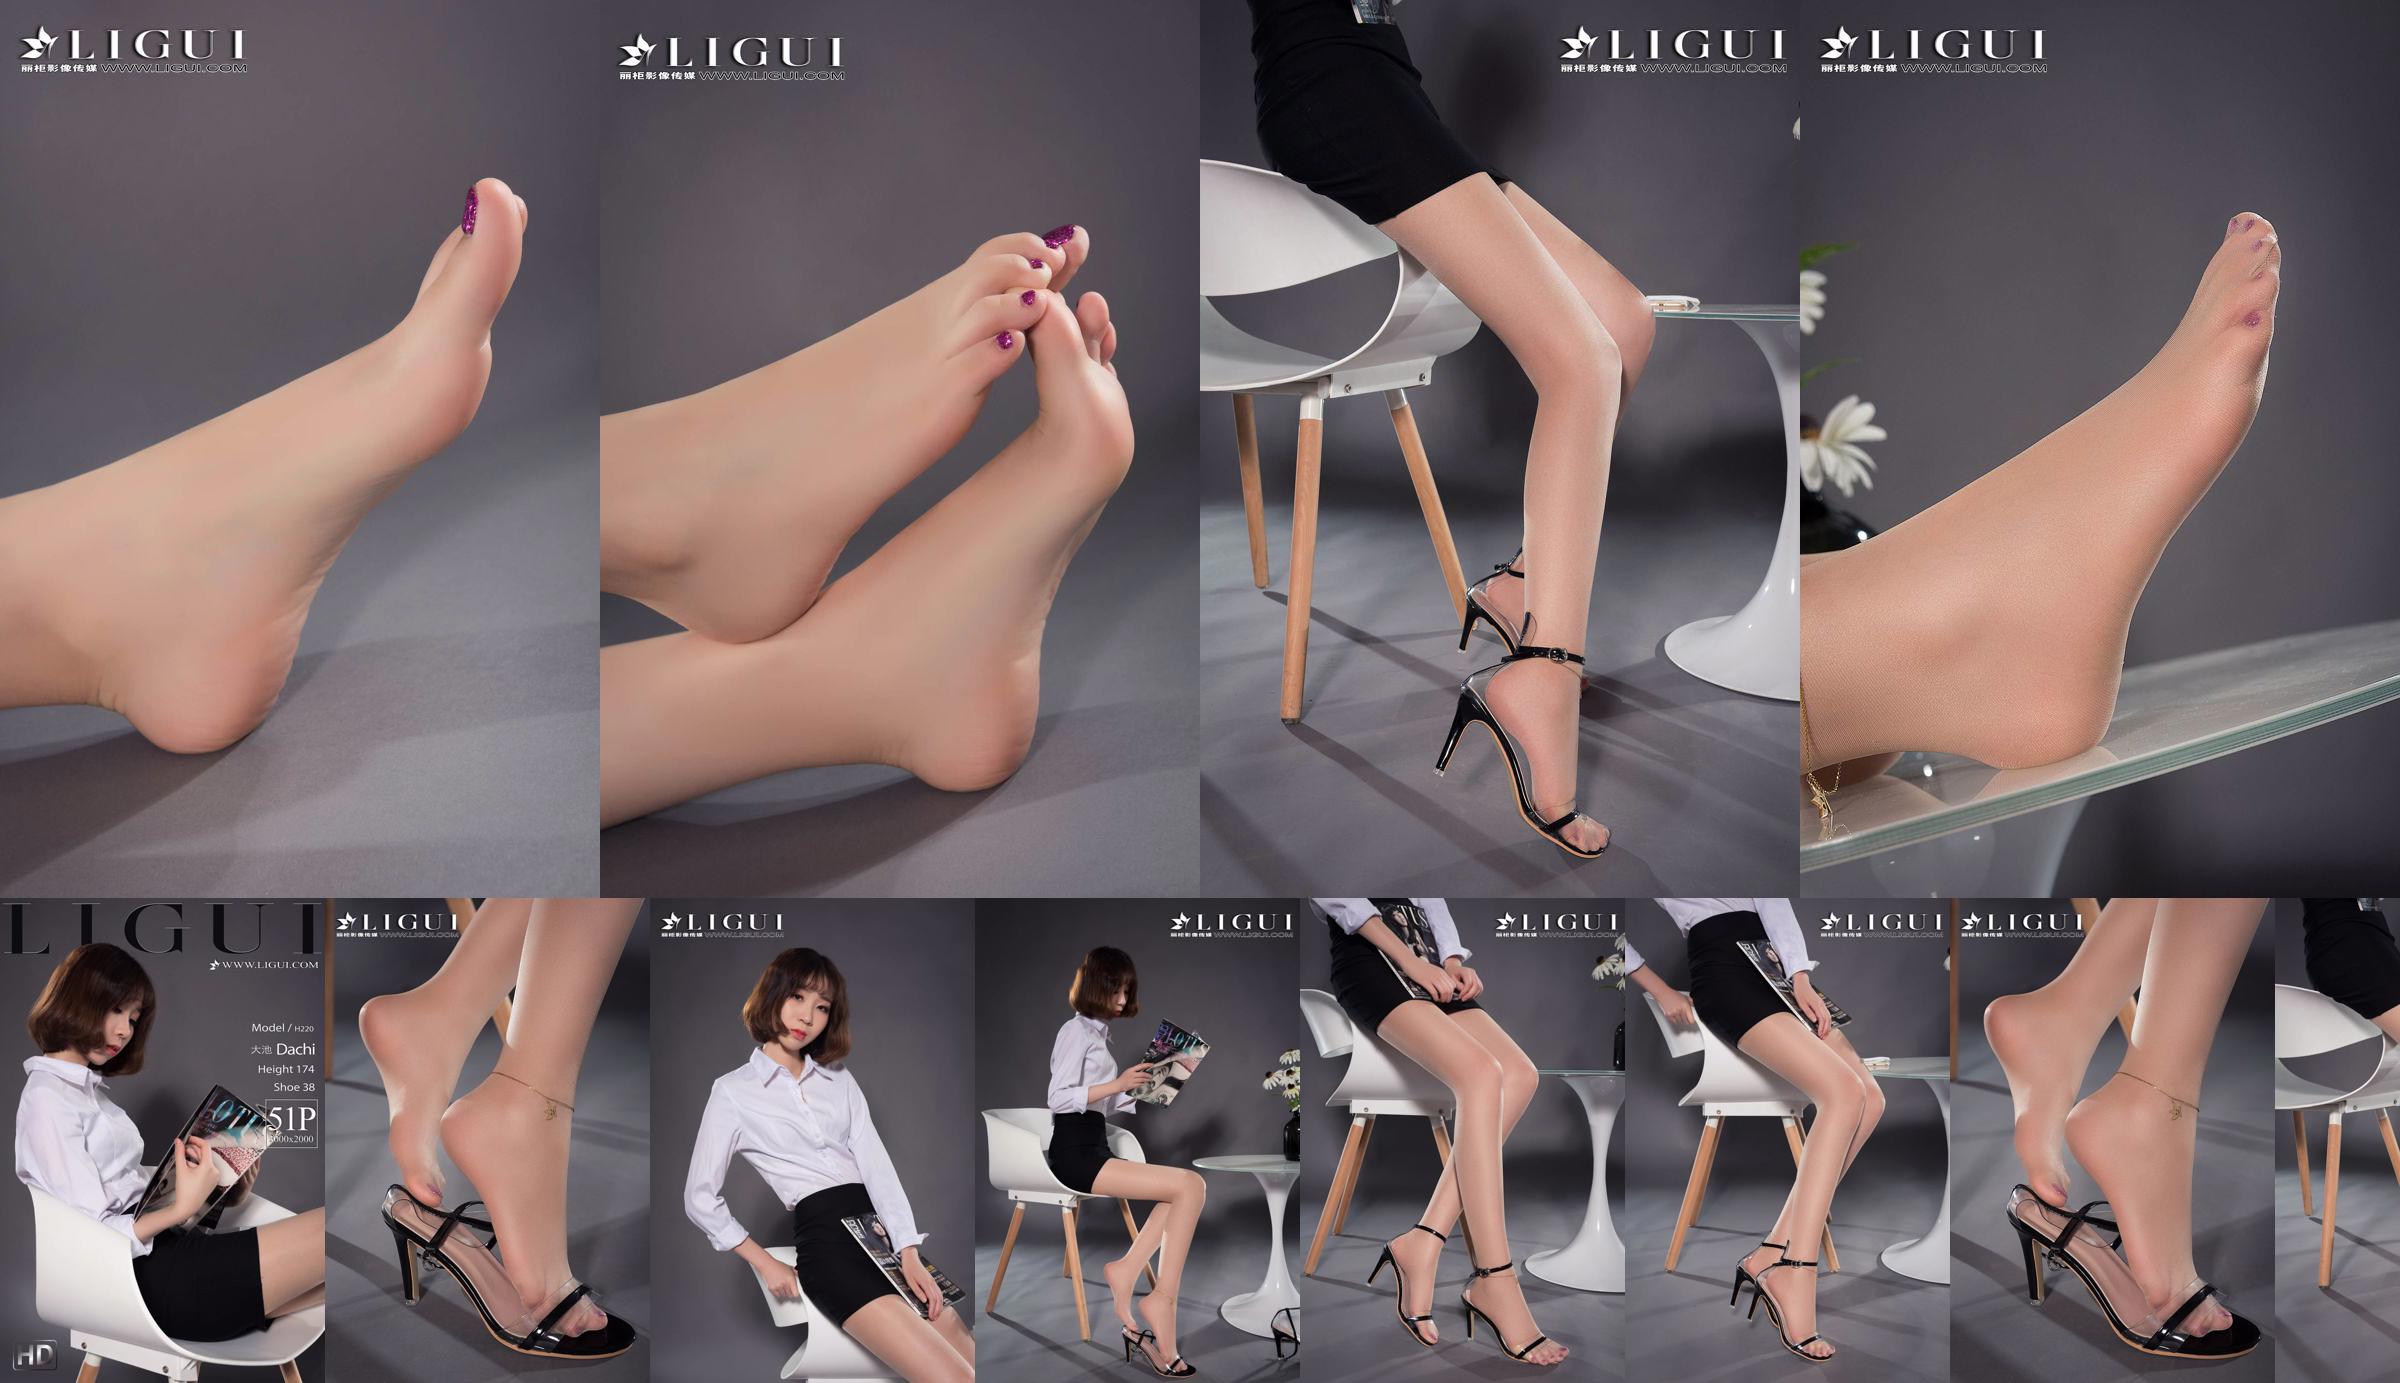 Người mẫu chân Oike "Heo với giày cao gót CV" [Ligui Ligui] Vẻ đẹp Internet No.2cd049 Trang 1